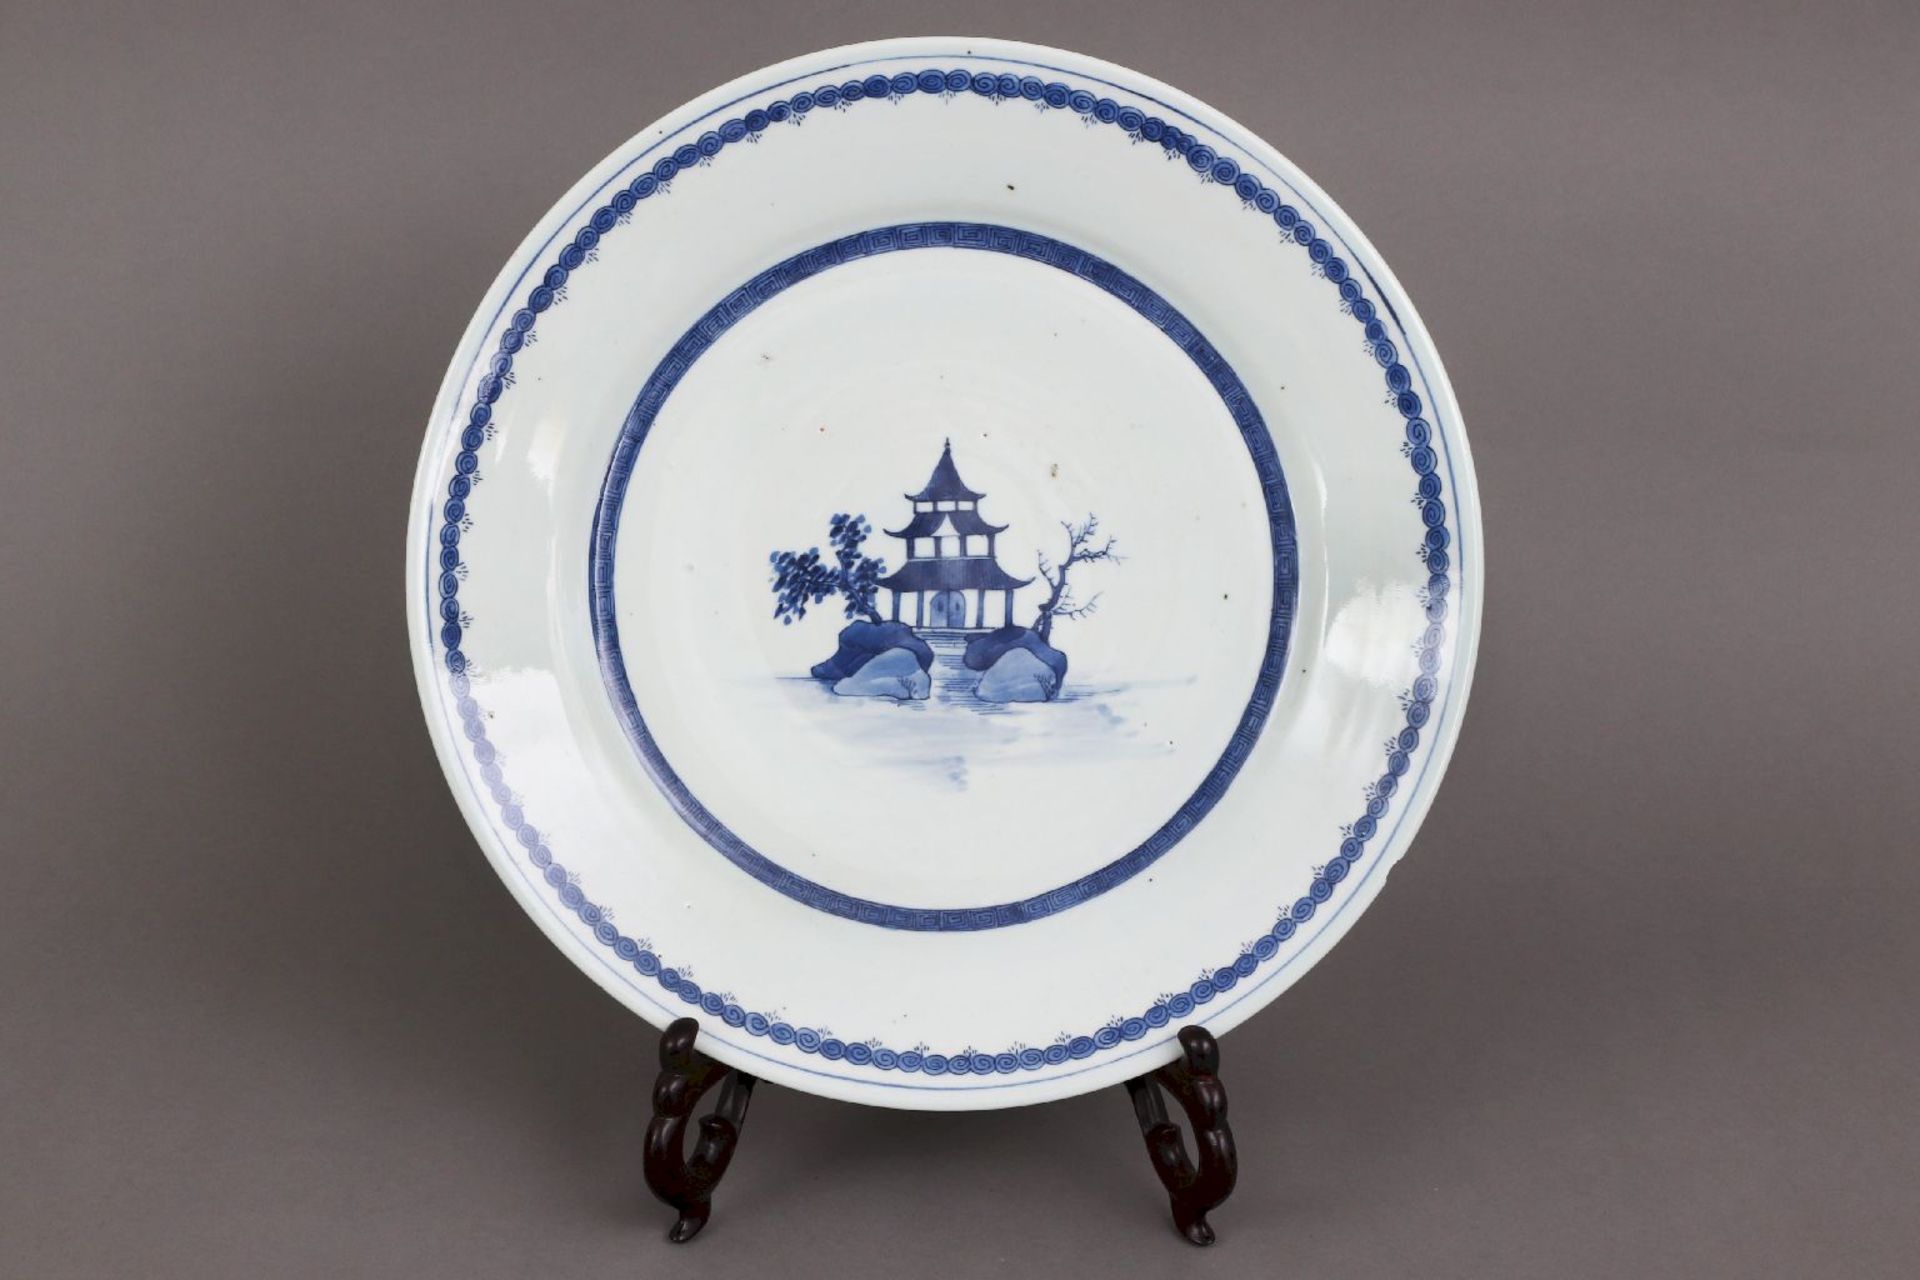 Chinesischer Porzellanteller der Qing Dynastie (1644-1912)